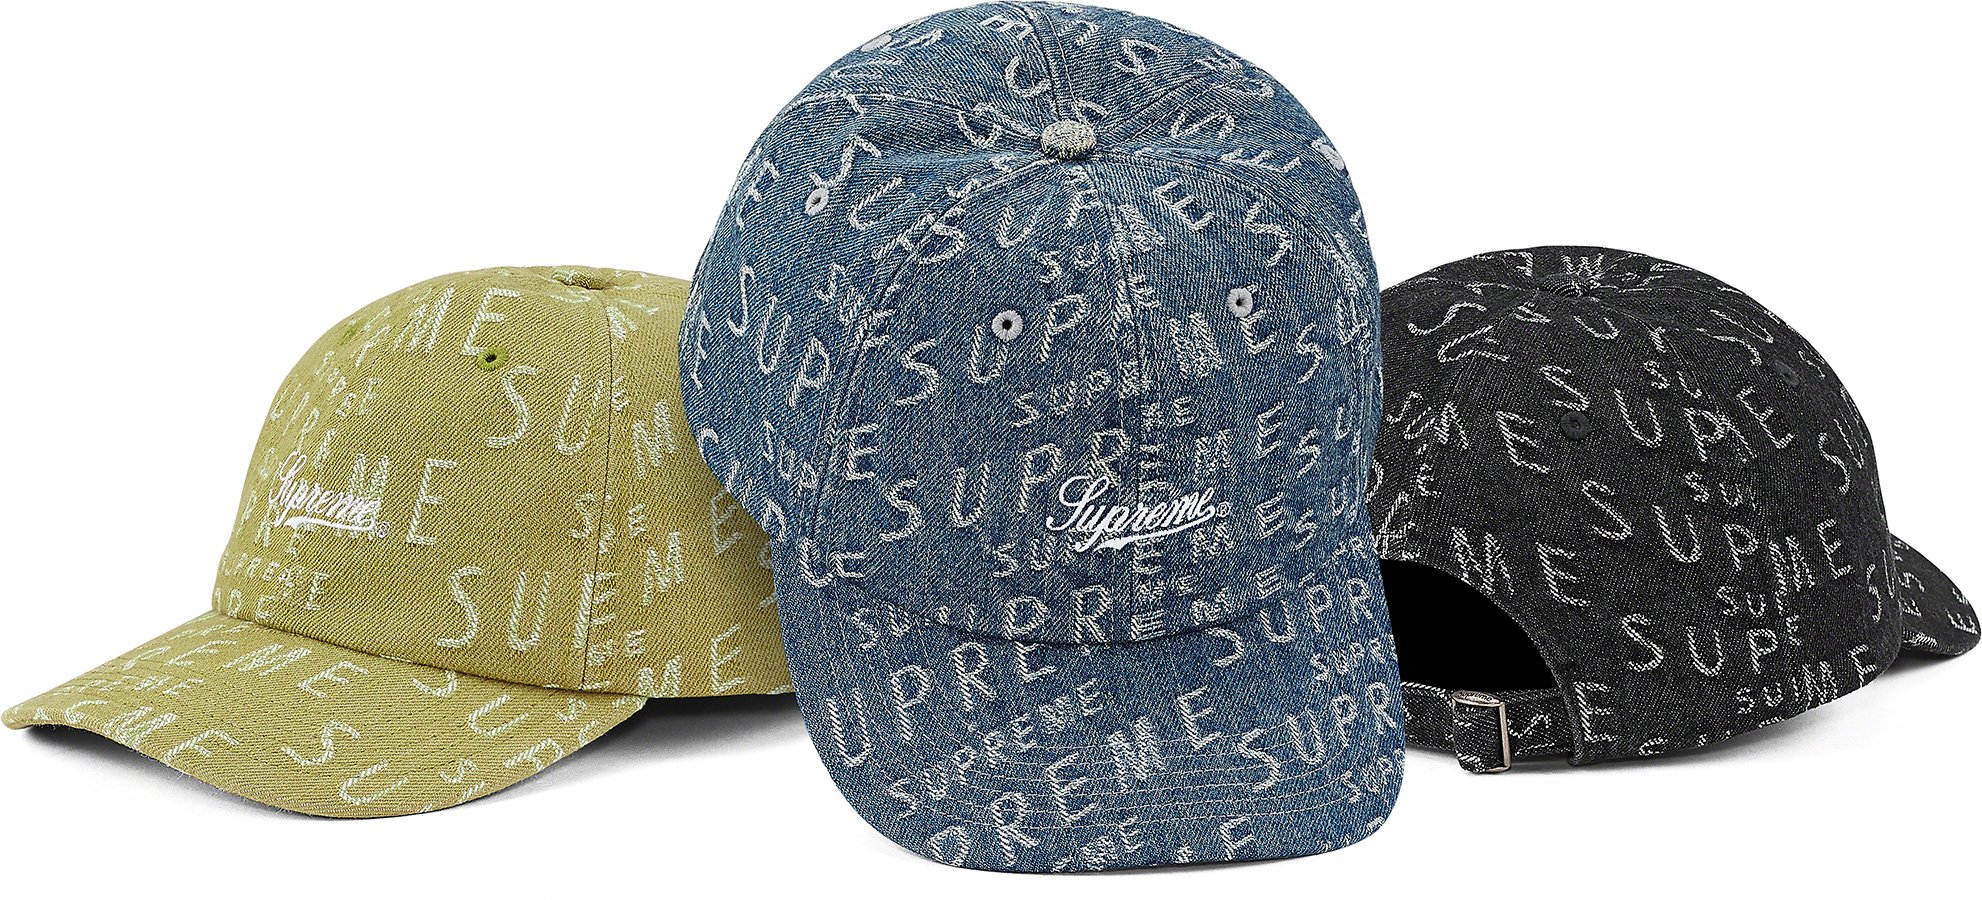 Supreme Warp Jacquard Logos Denim Hat